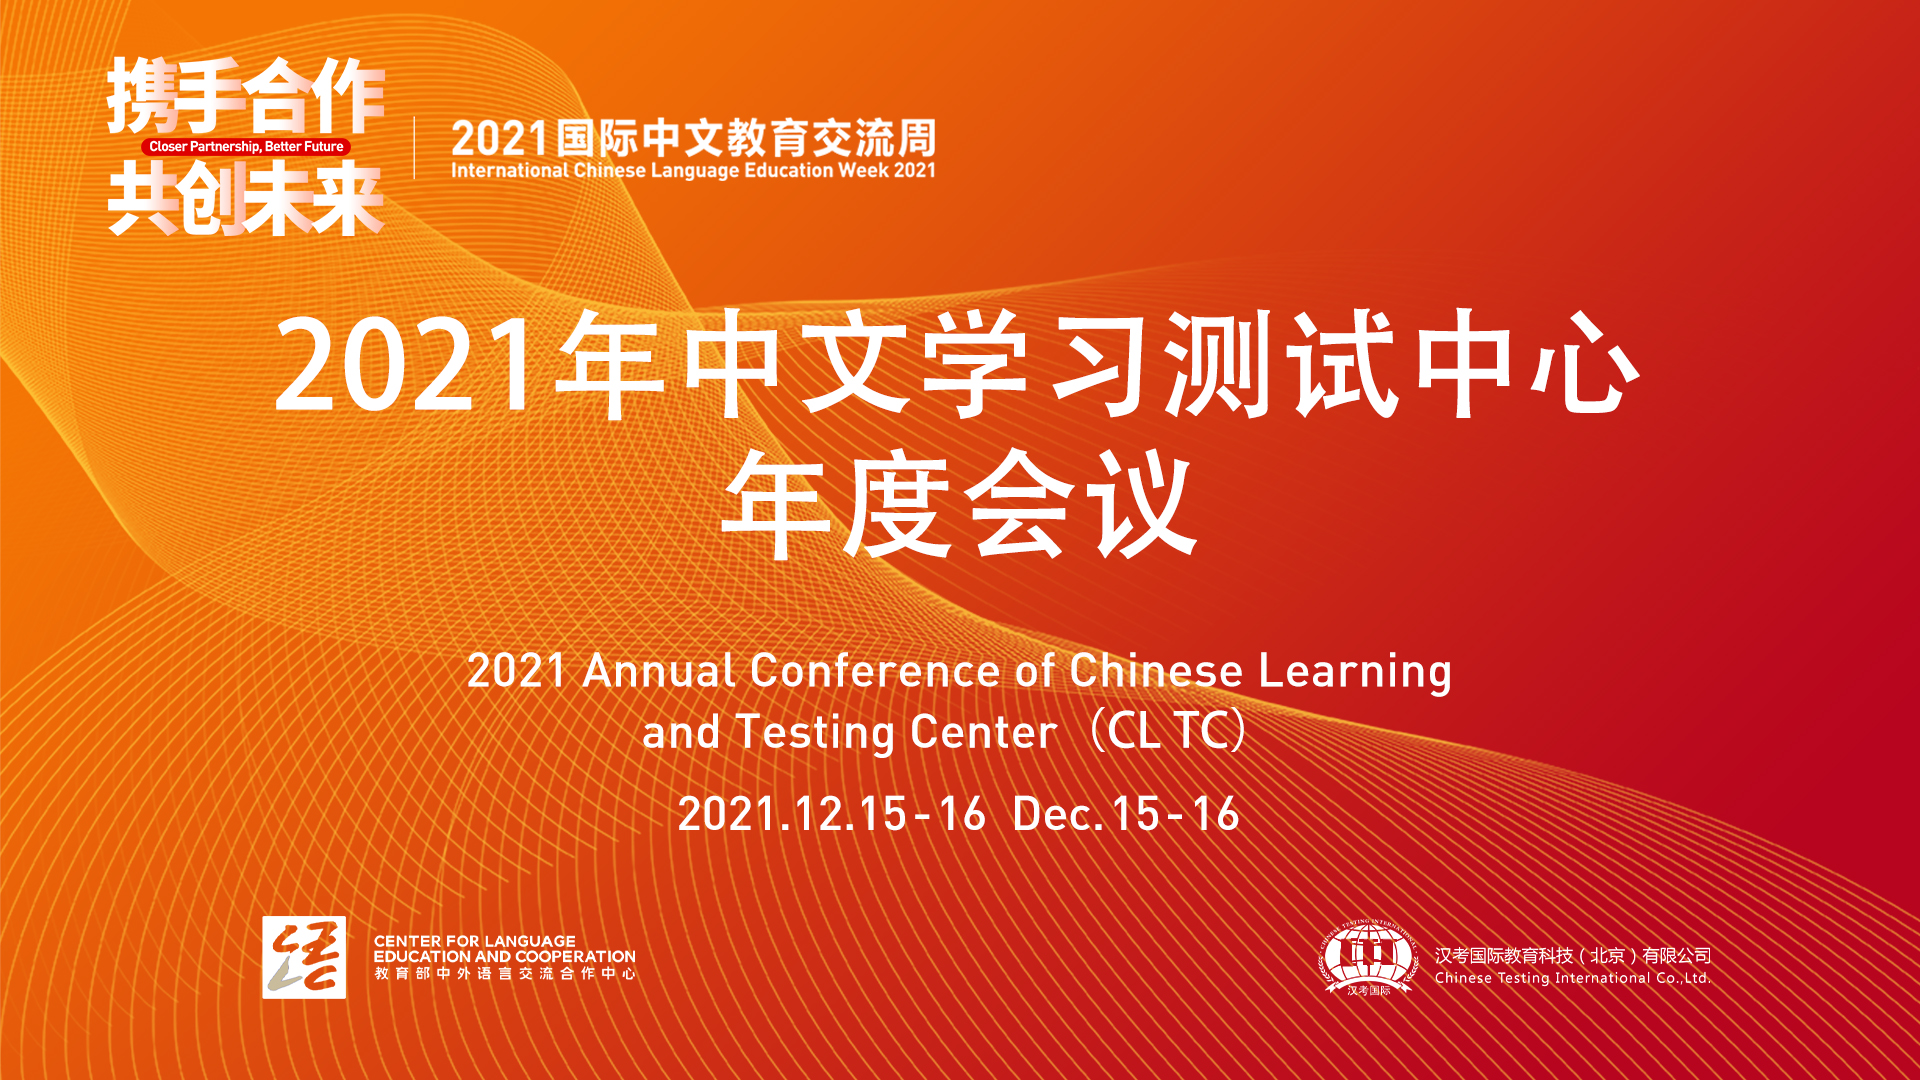 国际交流与合作处处长陈鸿雁出席“2021年国际中文教育交流周”活动并作主旨发言